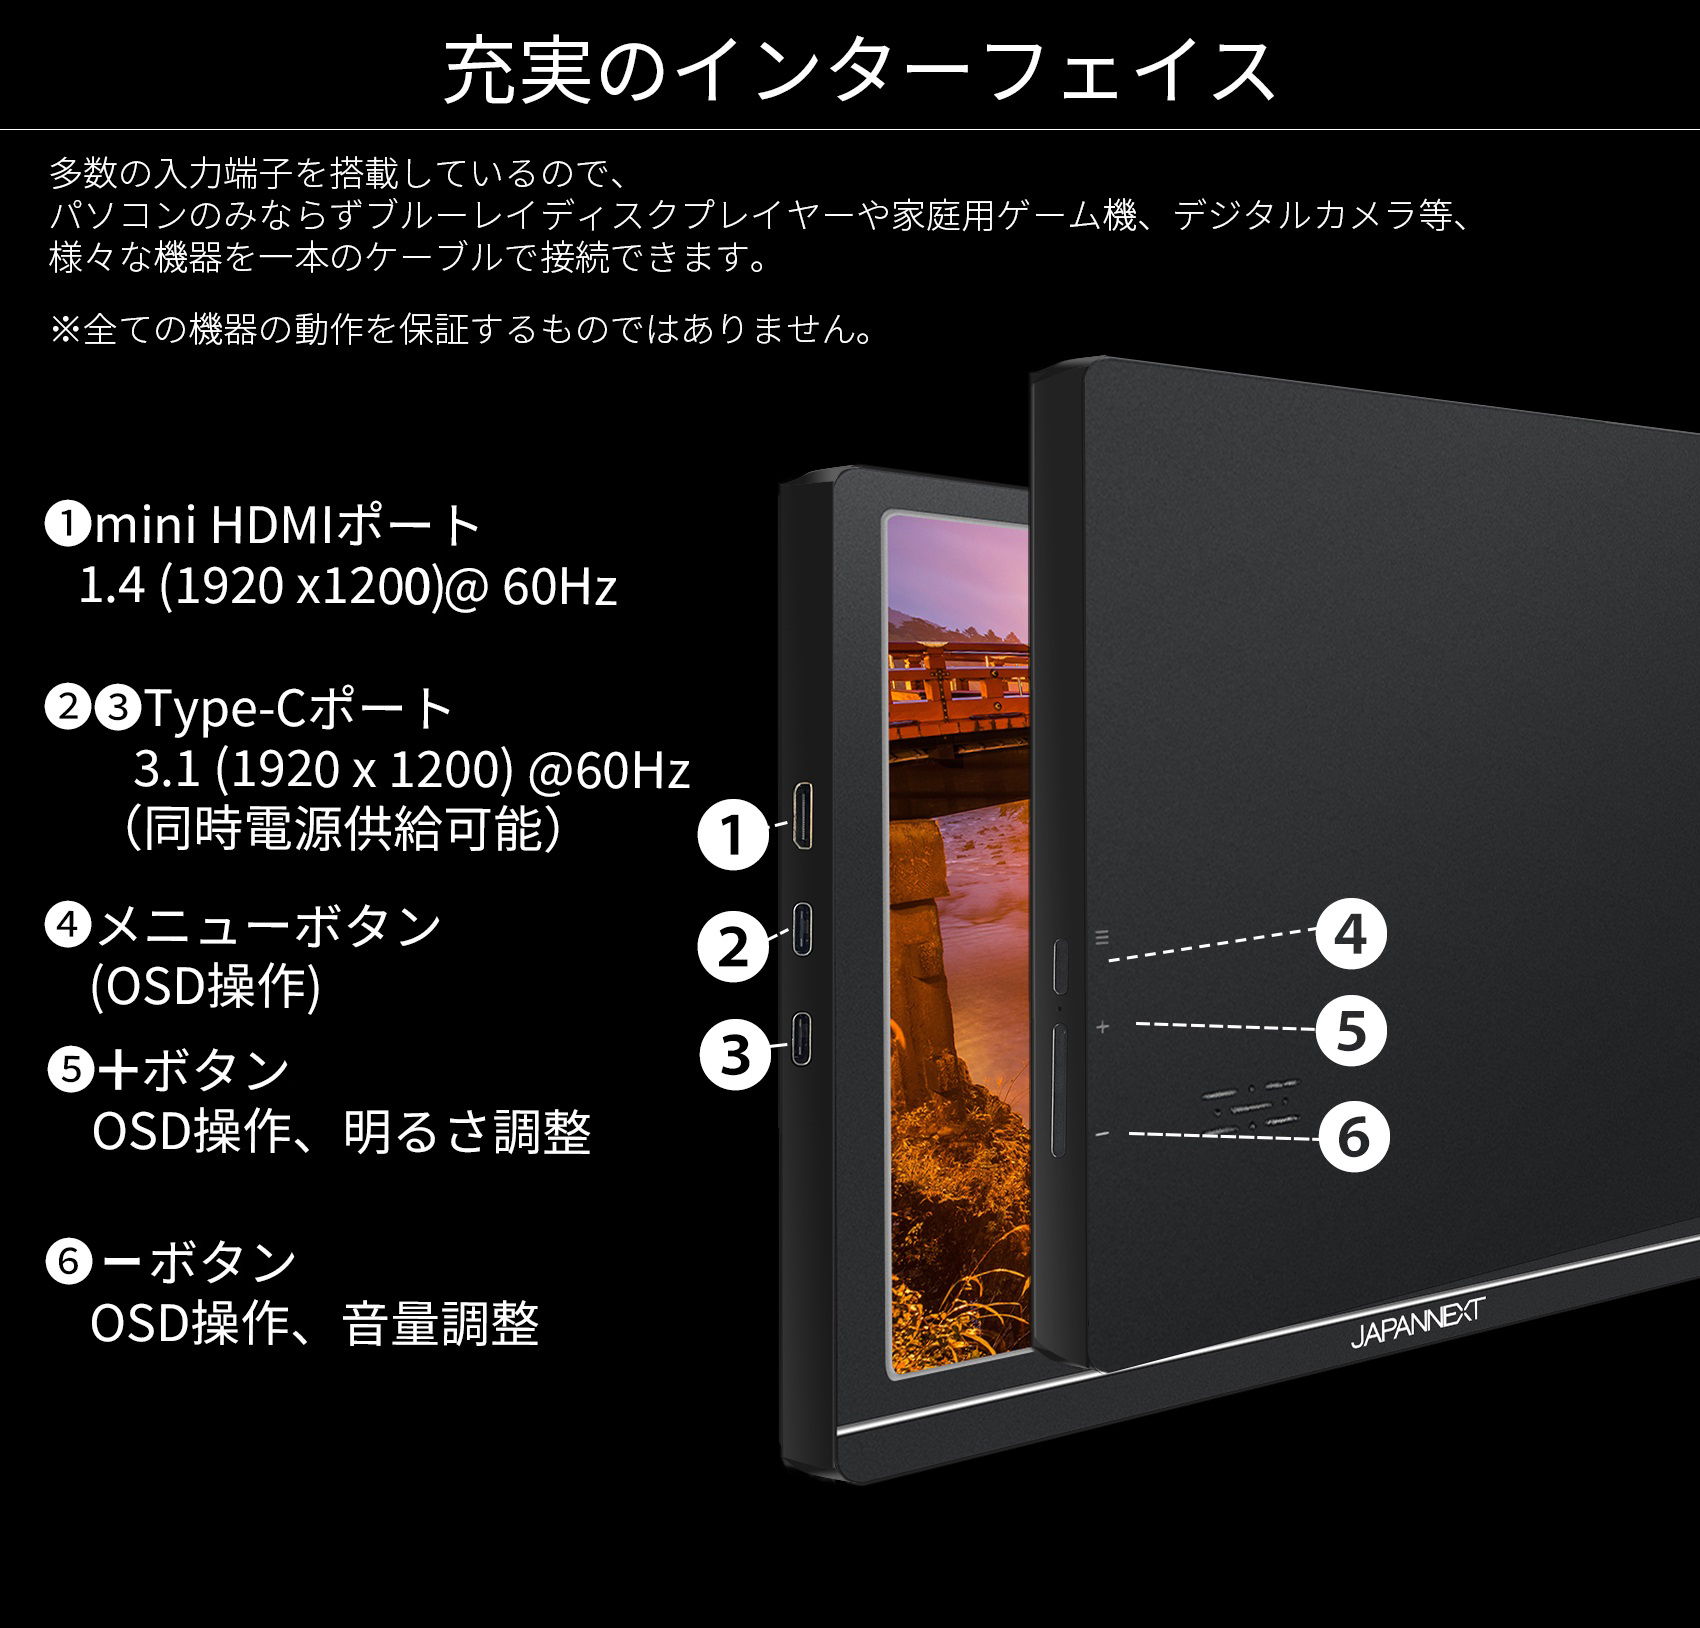 日本未入荷 10.1インチ ワイドモバイルディスプレイ 1920x1200 IPS グレア Mini HDMI TypeCx2 スピーカー 270g 